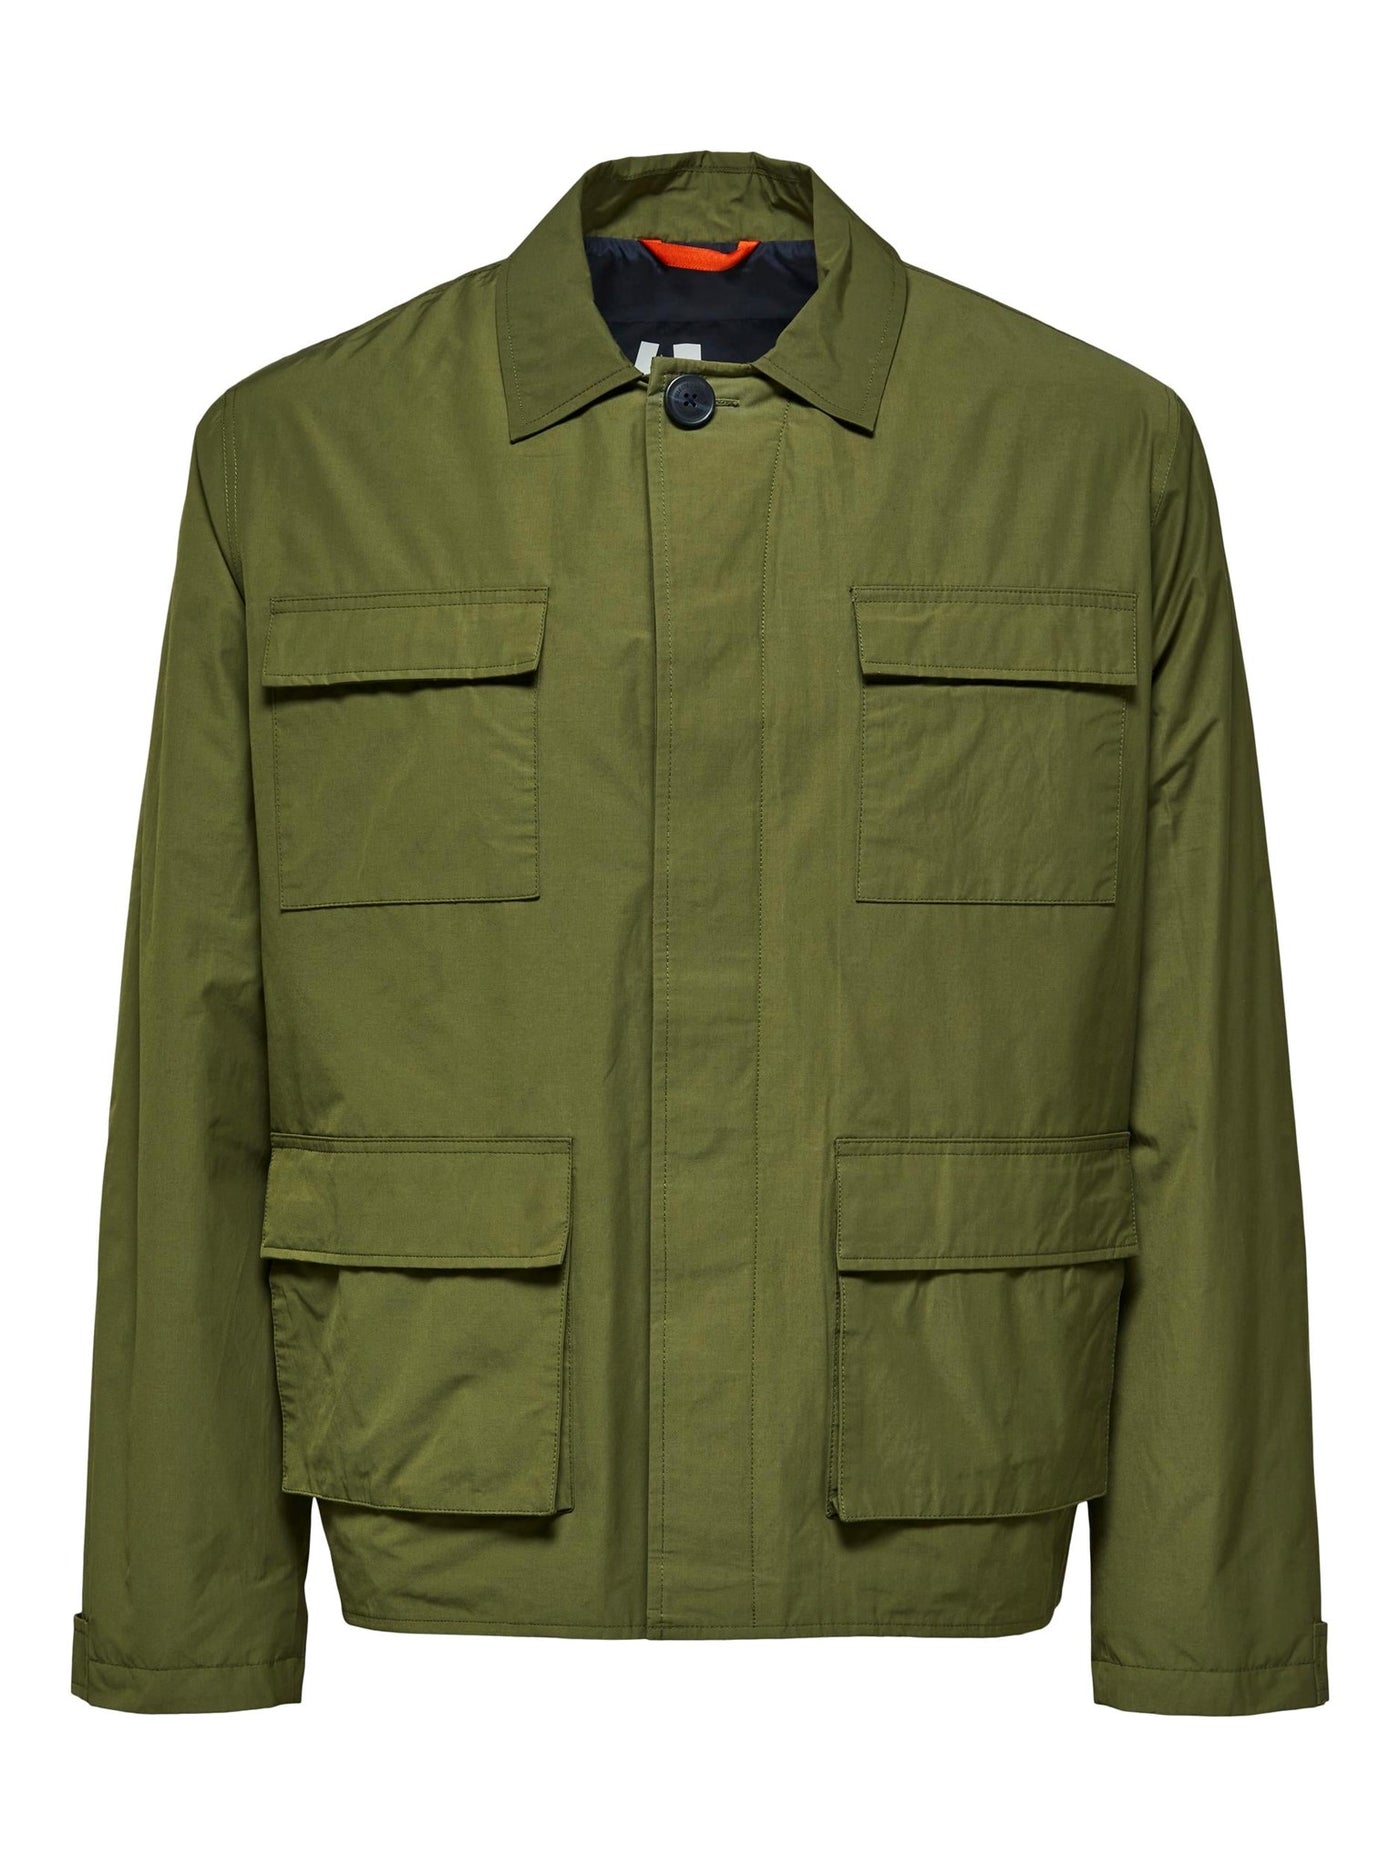 Regen Field Jacket - Winter Moss - Selected Homme - Green 6